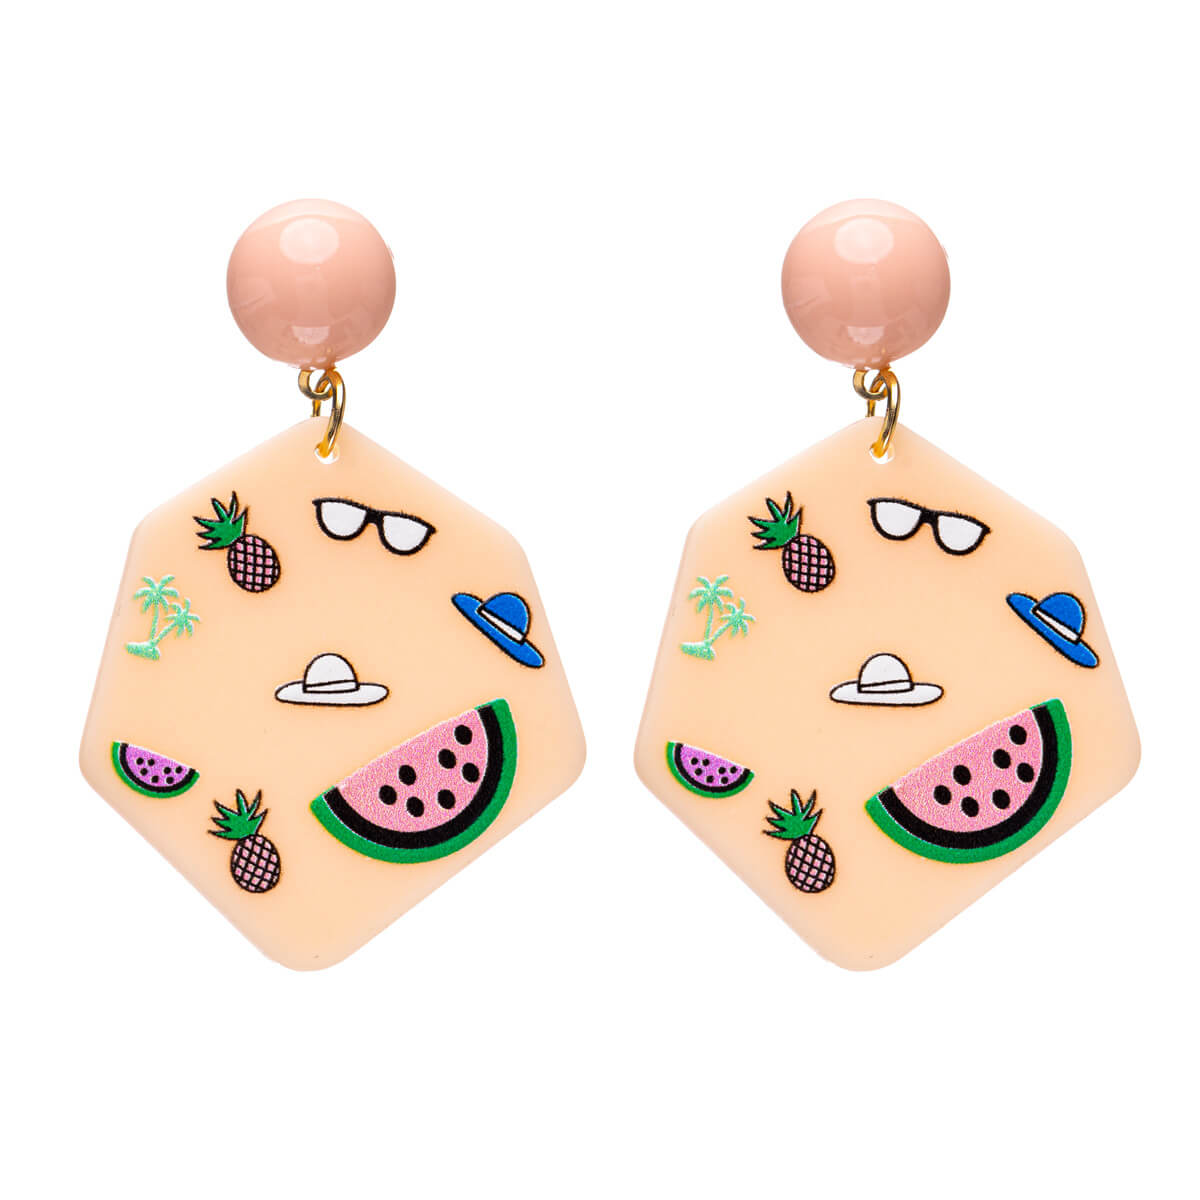 Hexagonal patterned earrings